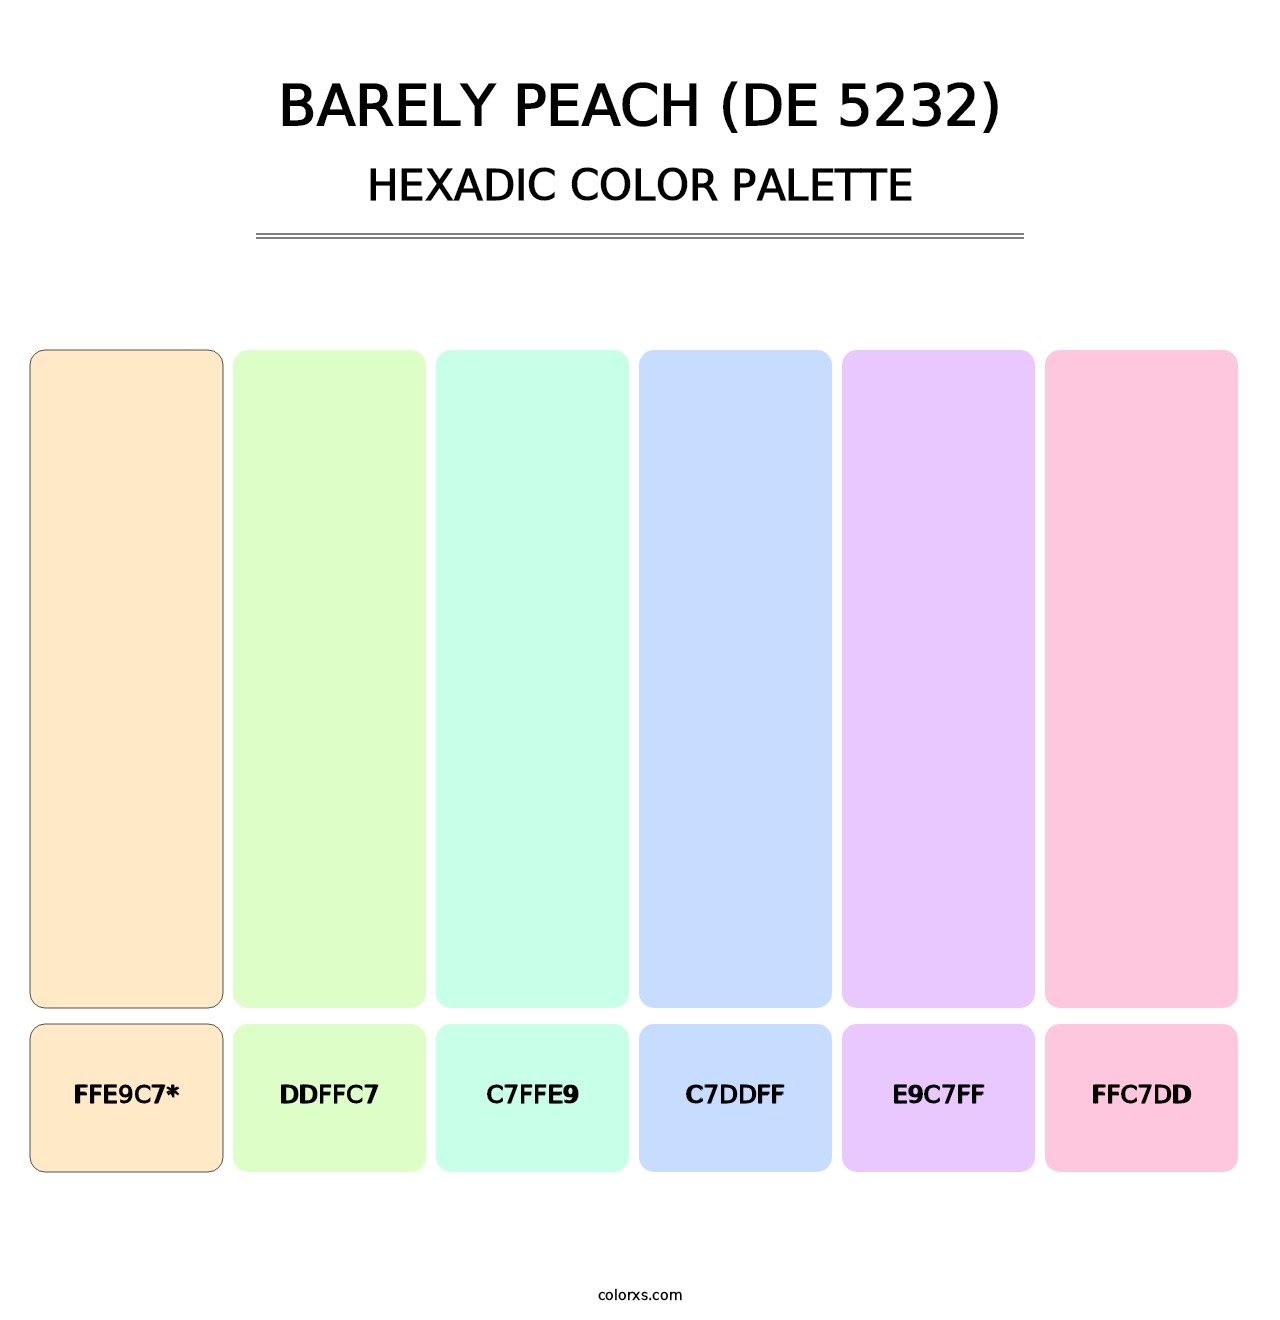 Barely Peach (DE 5232) - Hexadic Color Palette